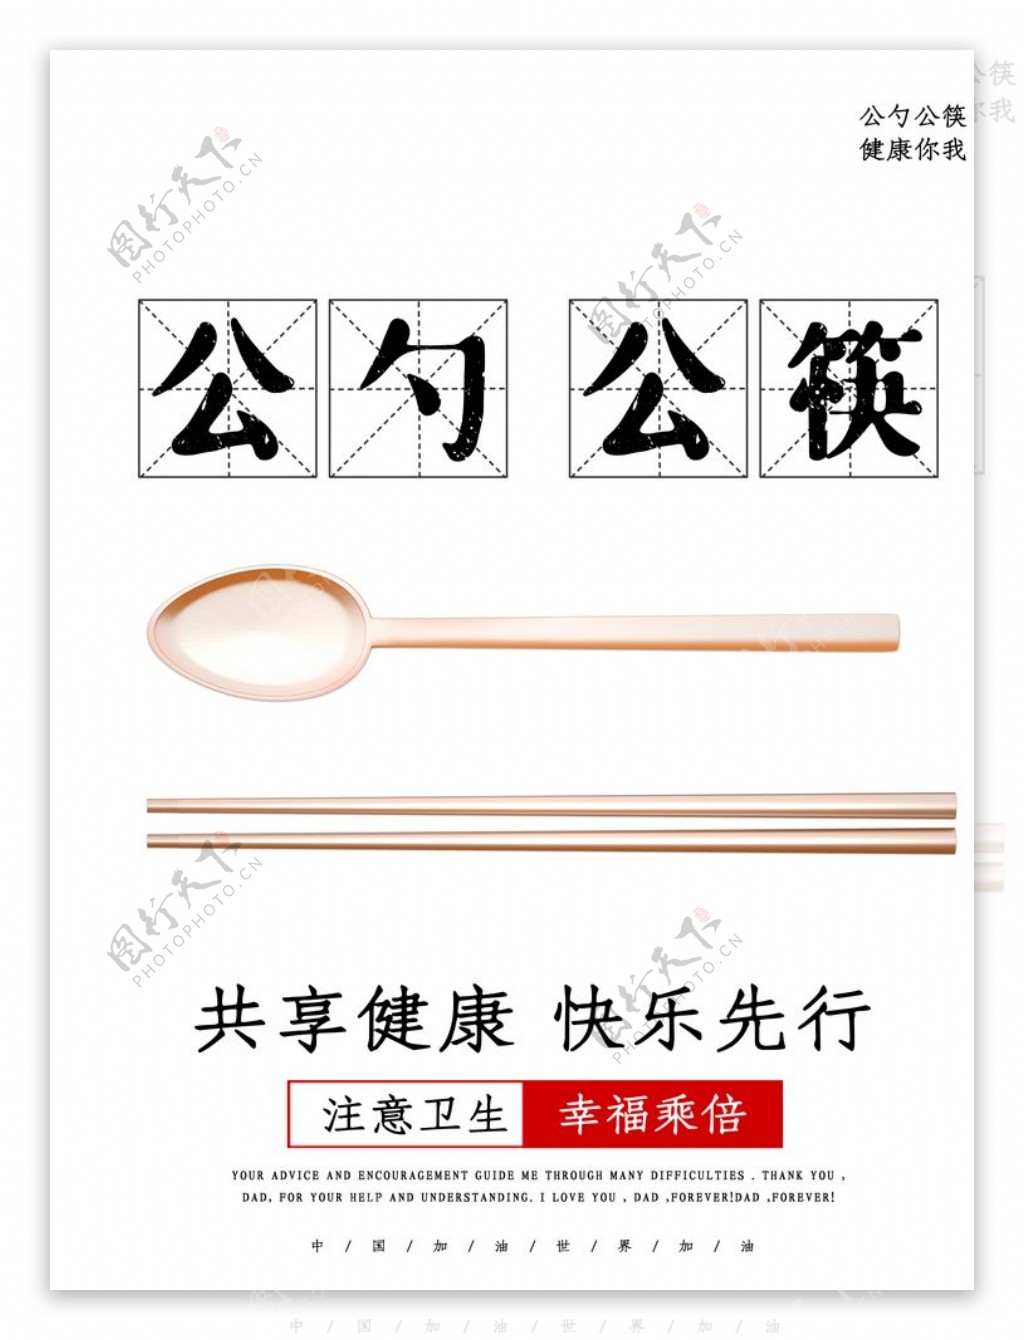 公勺公筷图片